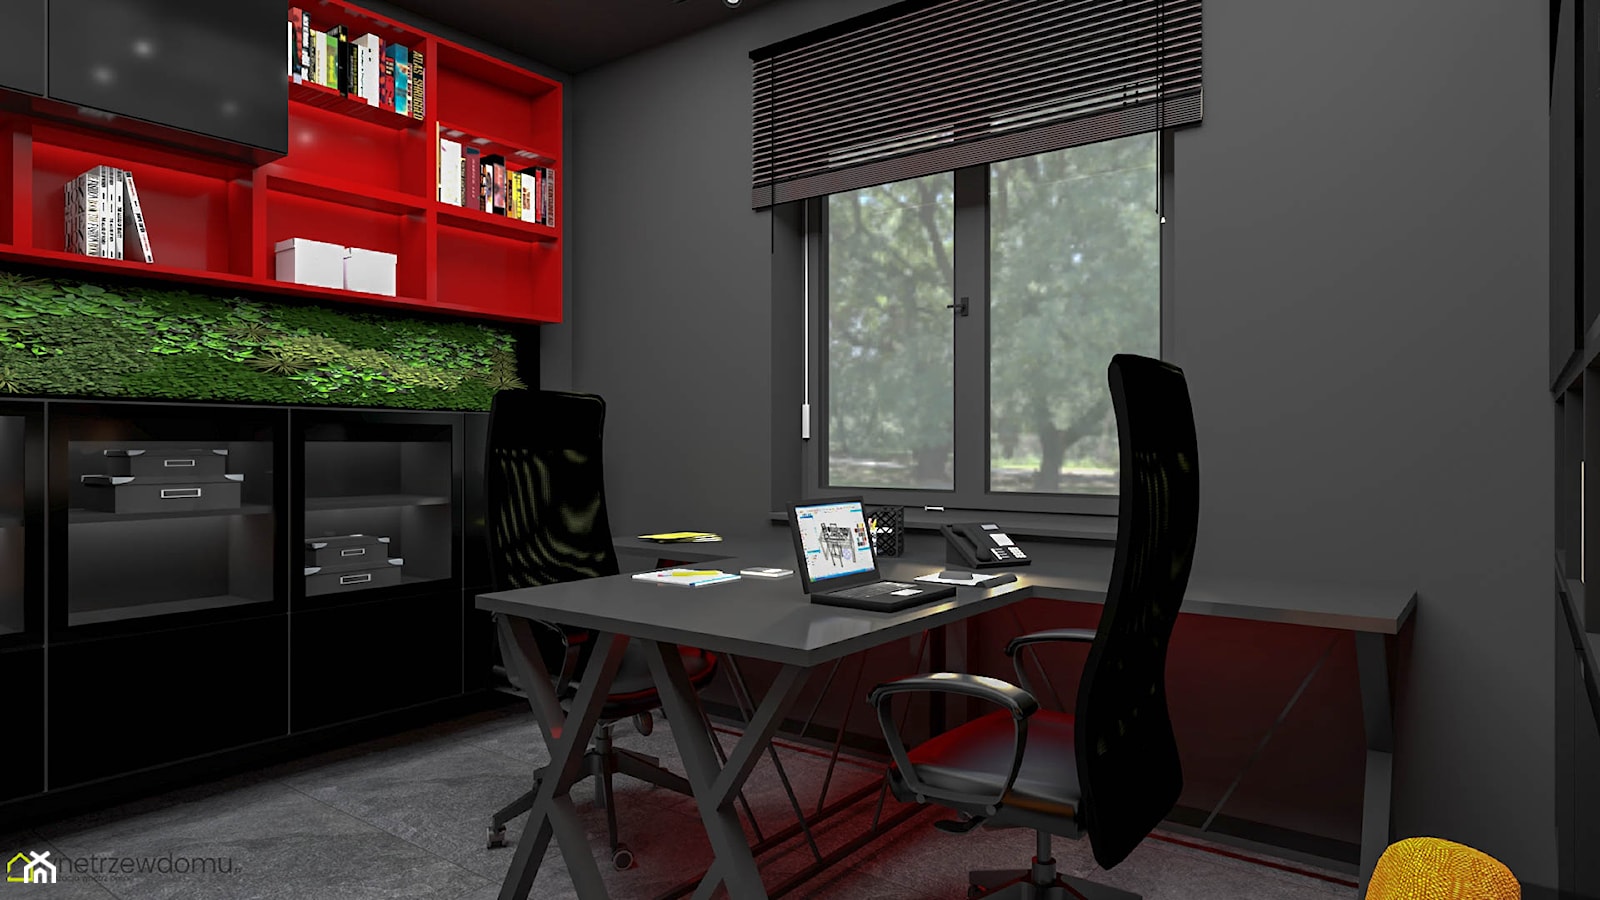 Gabinet w kolorach czerni z dodatkiem czerwieni - zdjęcie od wnetrzewdomu - Homebook